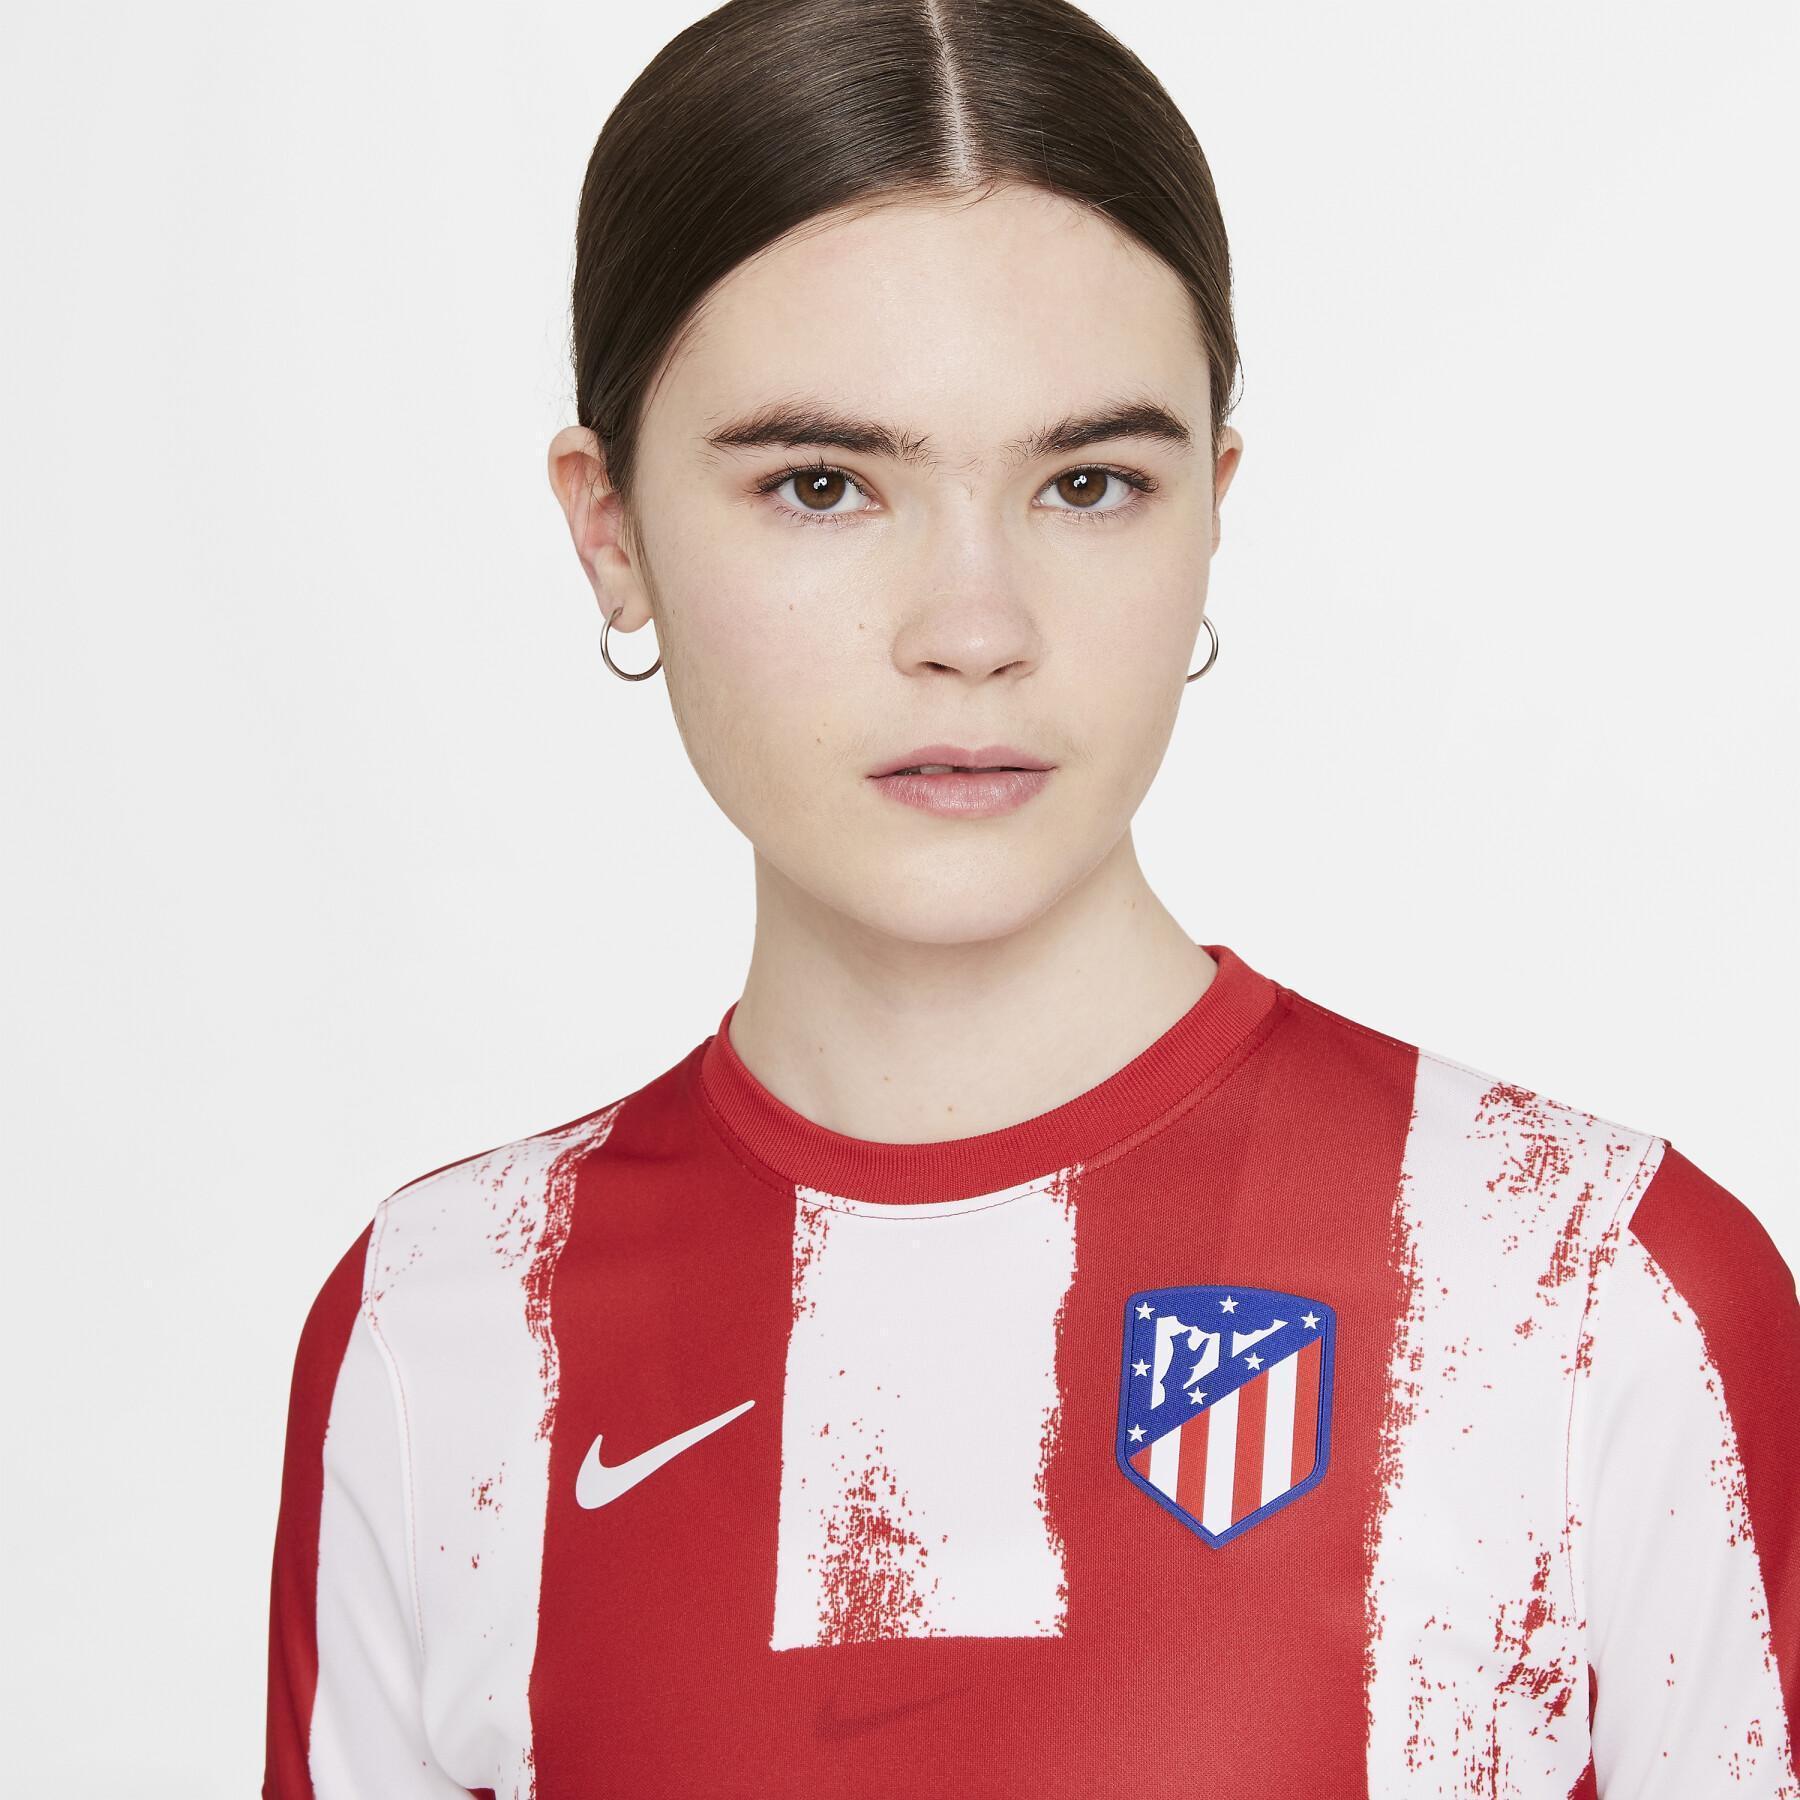 Camiseta primera equipación mujer Atlético Madrid 2021/22